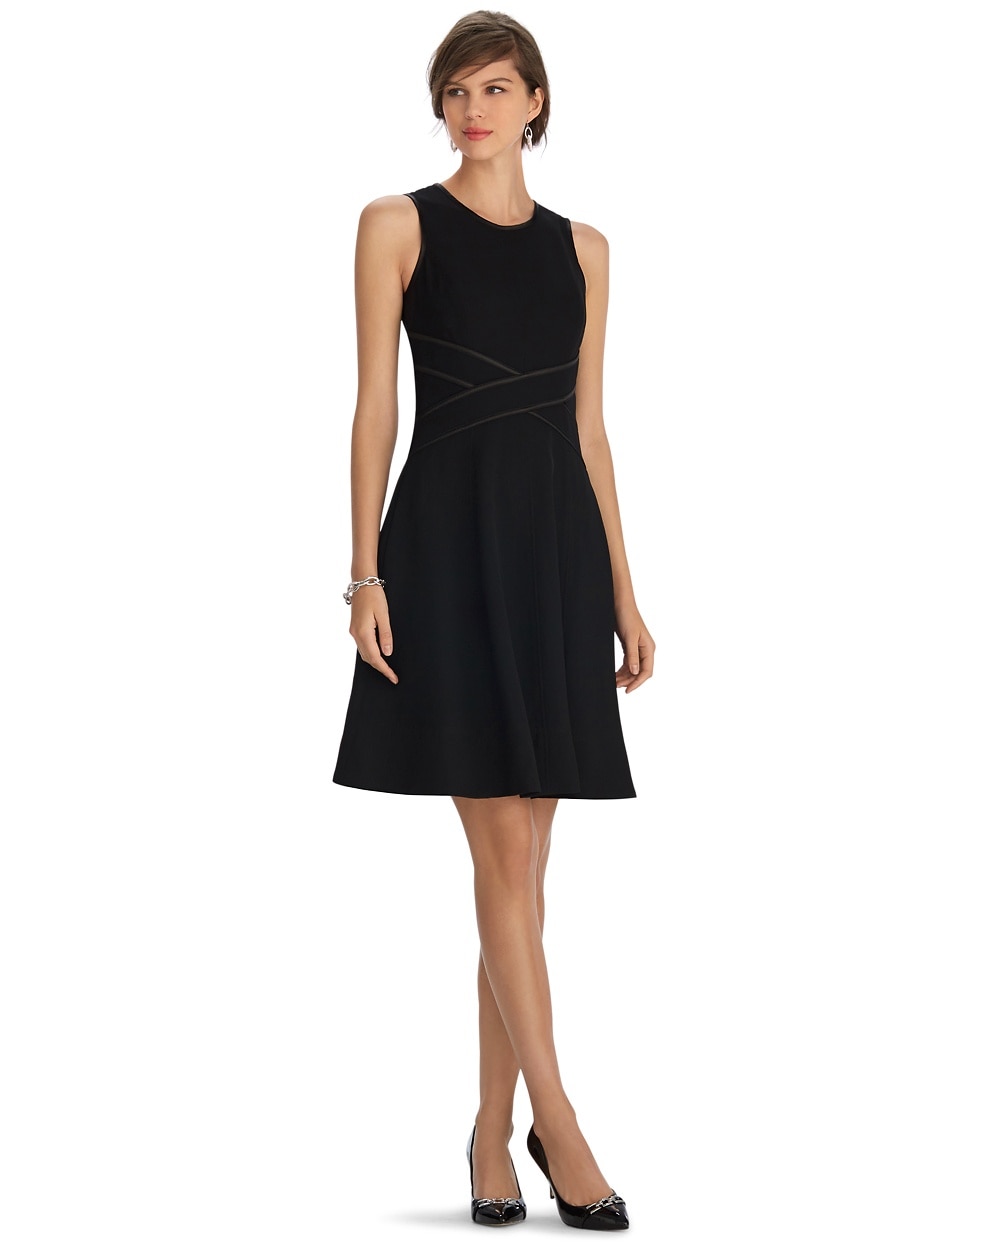 Sleeveless Iconic Fit and Flare Black Dress - White House Black Market